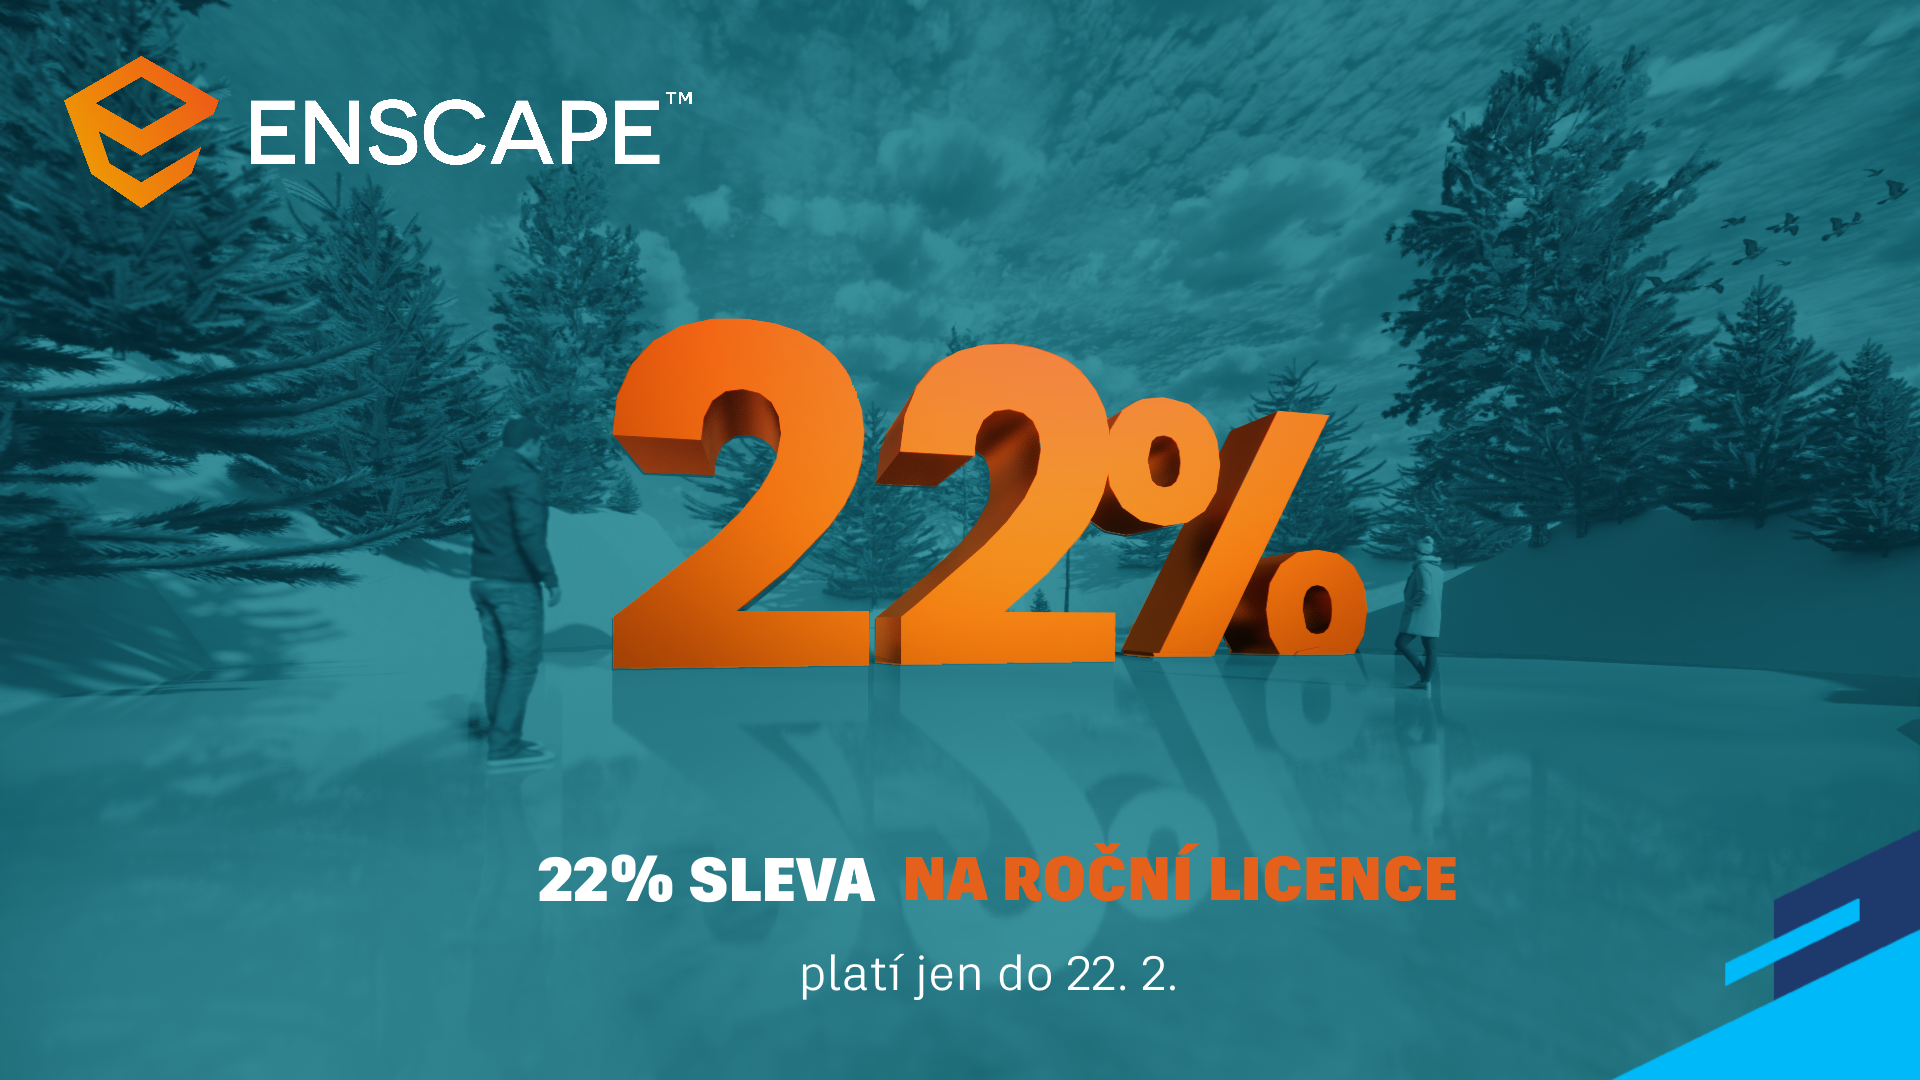 Enscape - 22% sleva na roční licence